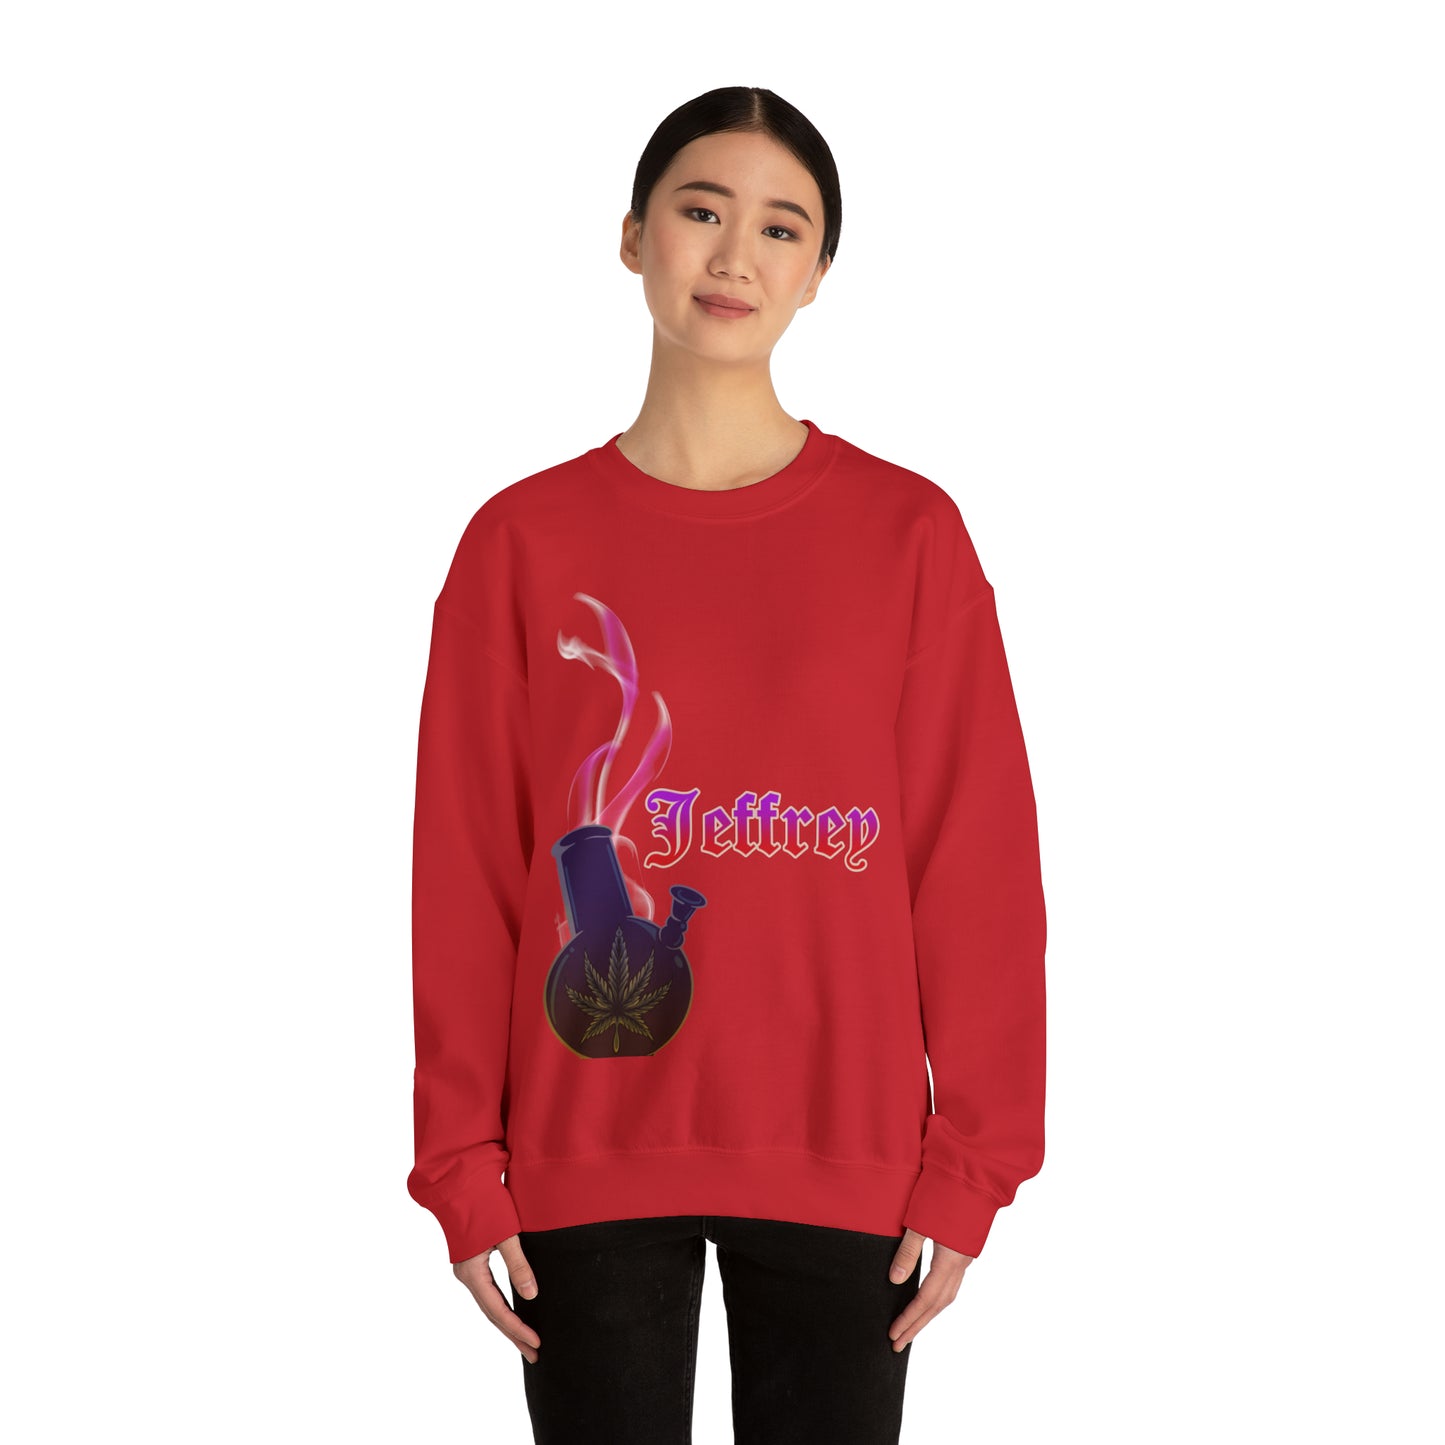 Customize sweatshirt